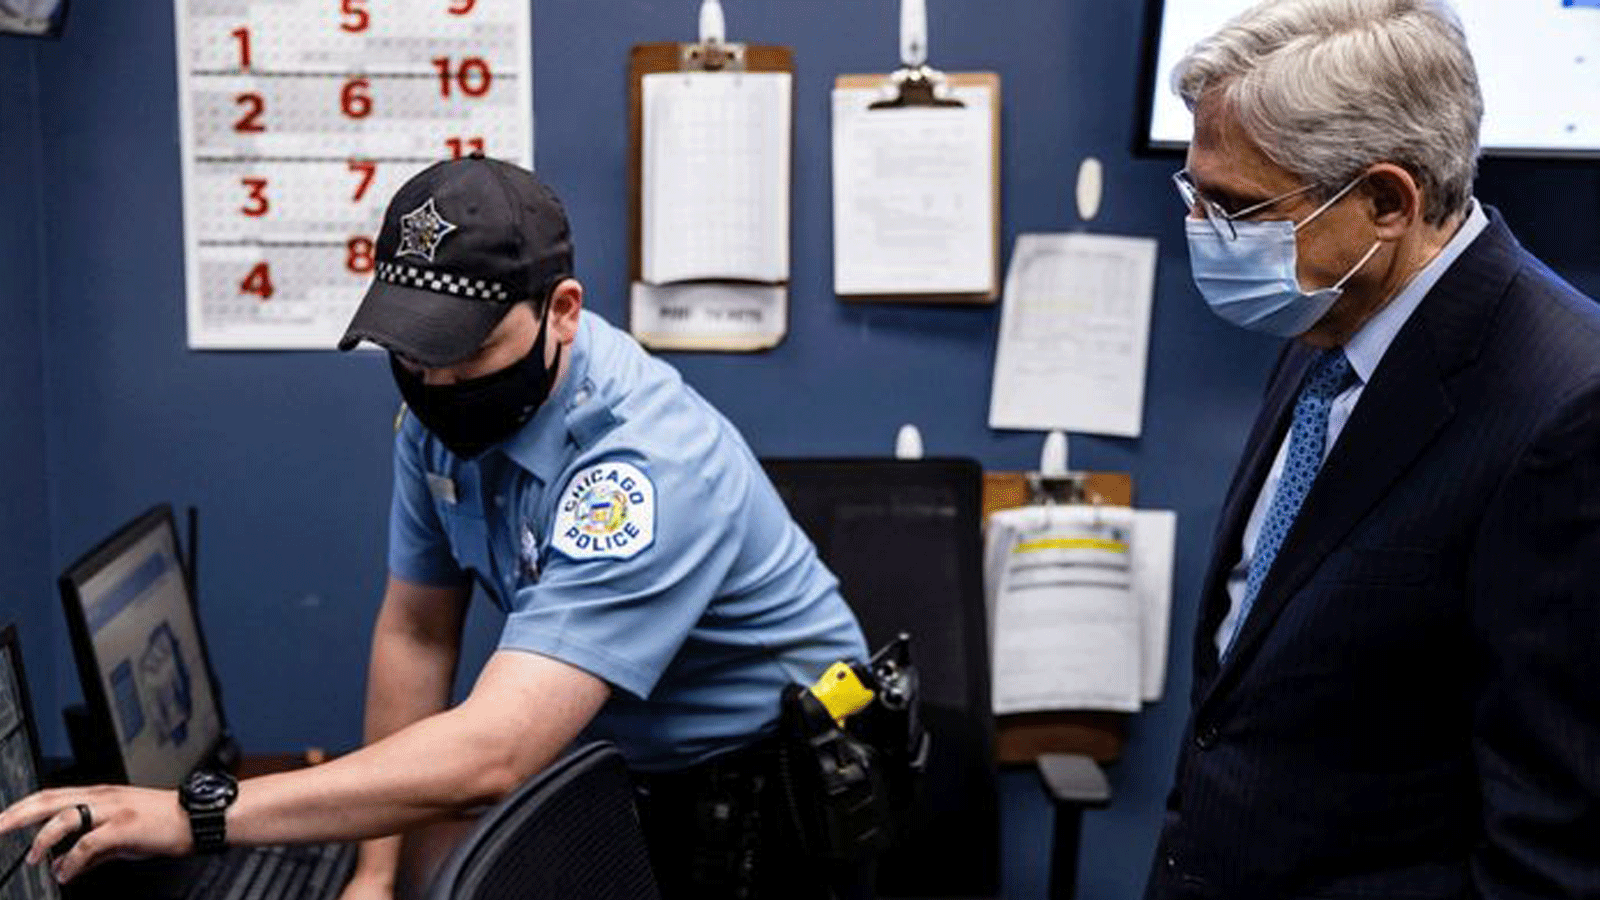  ضابط يشرح تقنية الشرطة في شيكاغو للمدعي العام الأمريكي ميريك جارلاند خلال زيارة يوليو إلى مركز دعم القرار الاستراتيجي التابع لإدارة شرطة شيكاغو